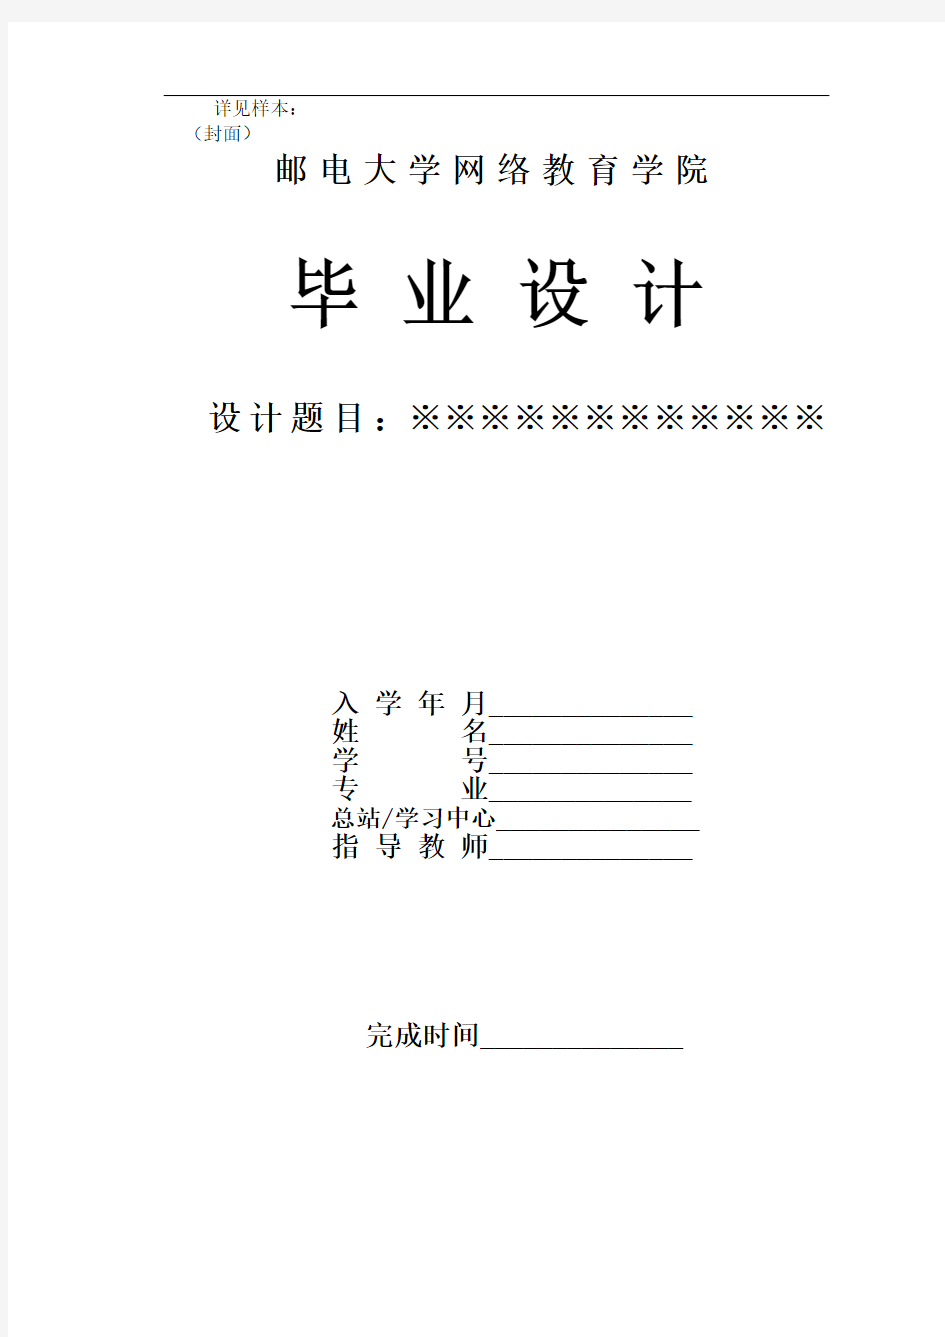 @北京邮电大学网络教育学院毕业设计论文设计装订顺序及格式要求